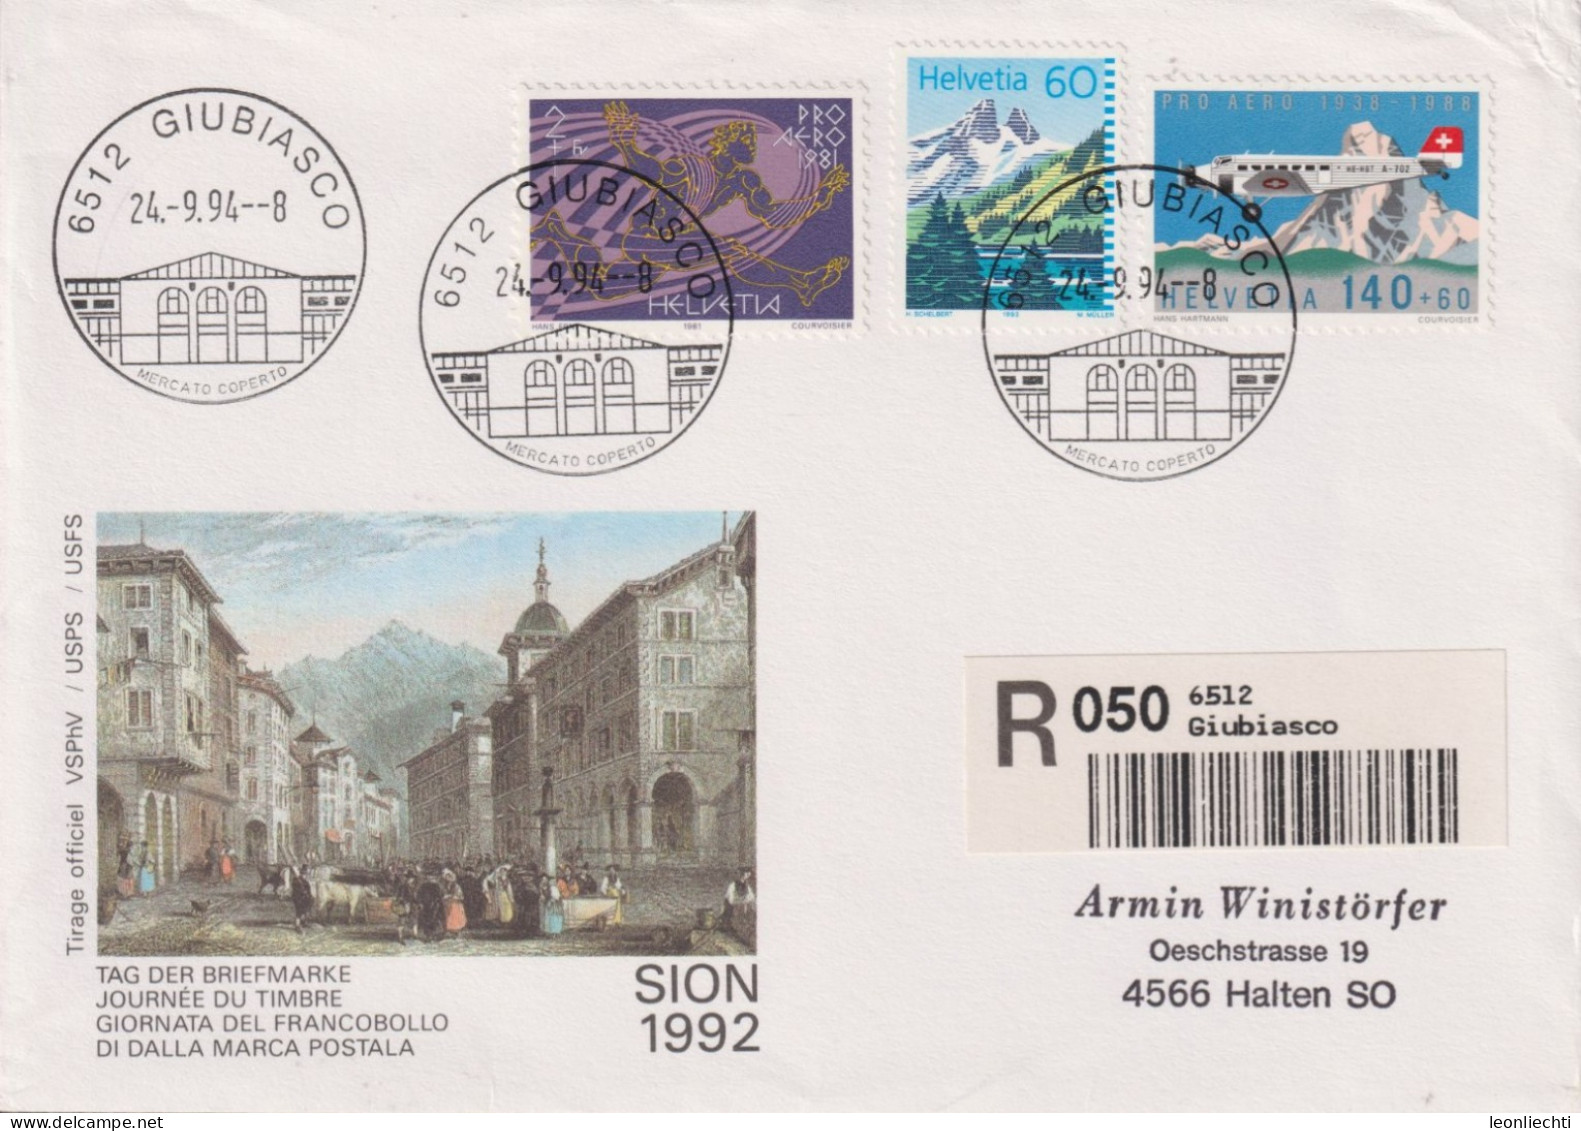 1994 Schweiz Tag Der Briefmarke Sion, Zum:CH F49+W48+837, Mi:CH 1369+1196+1489, ° 6512 GIUBIASSCO - Covers & Documents